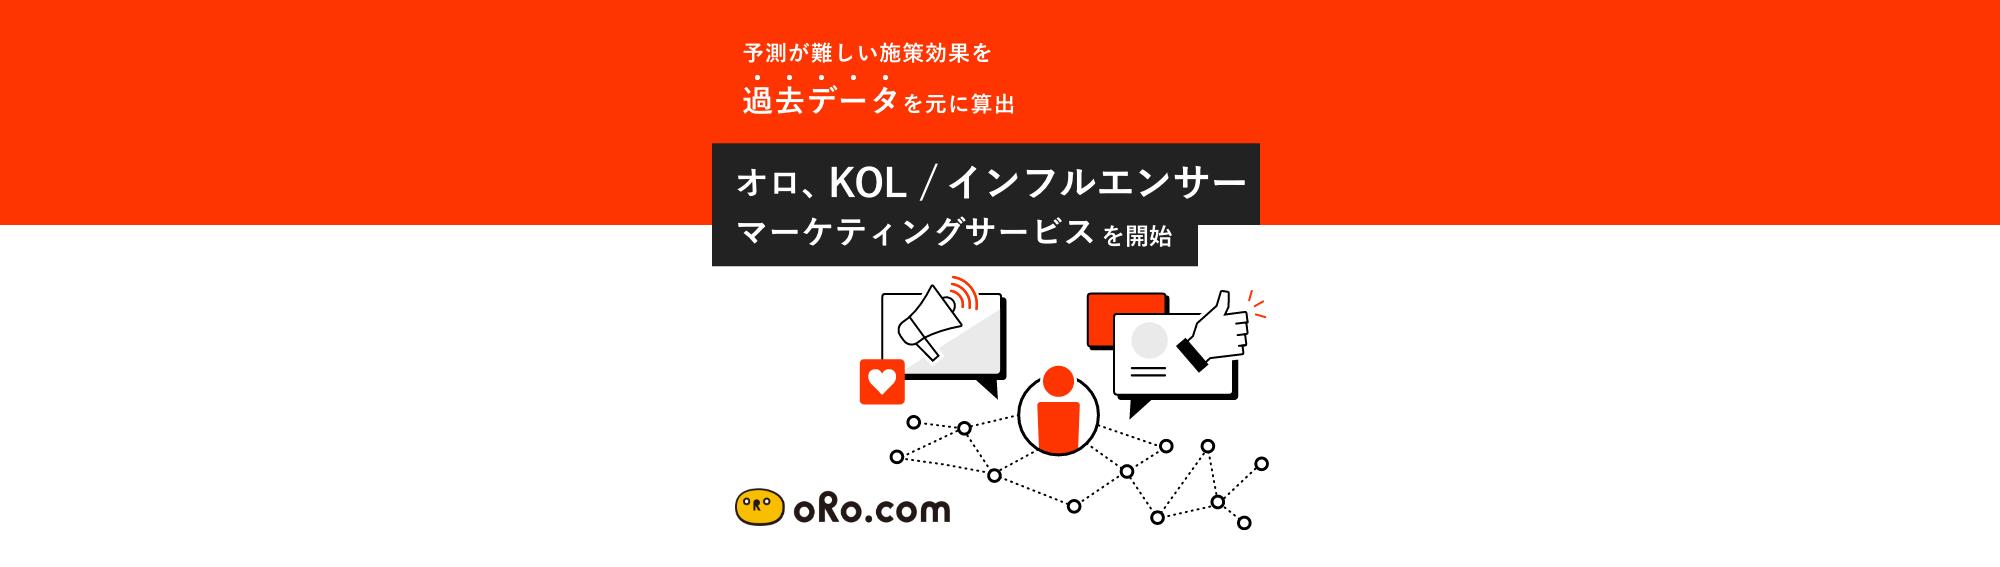 オロ、KOL / インフルエンサーマーケティングサービスを開始